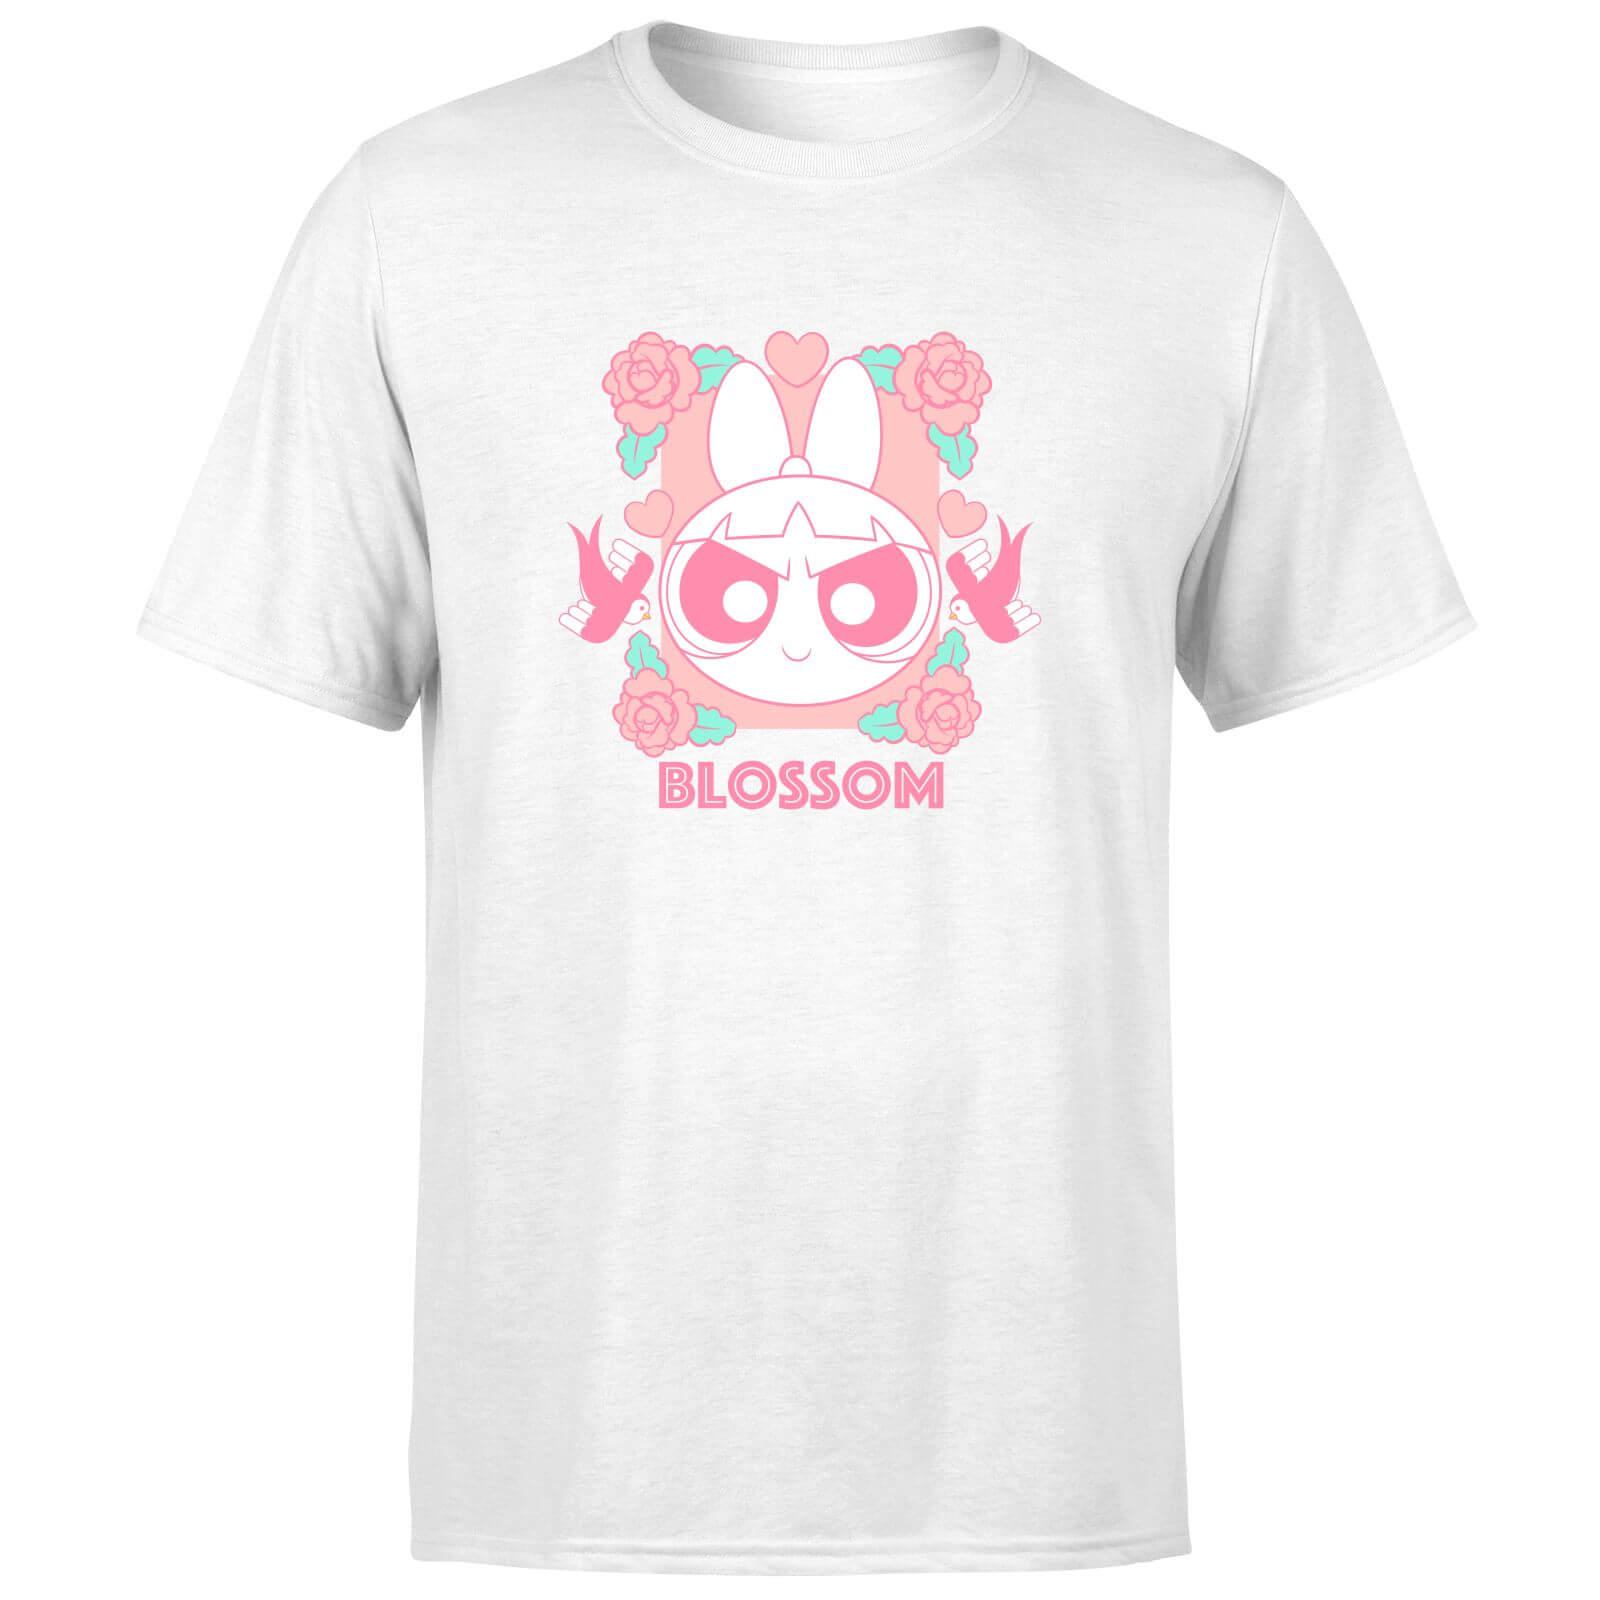 The Powerpuff Girls Blossom Unisex T-Shirt - White - XS - White